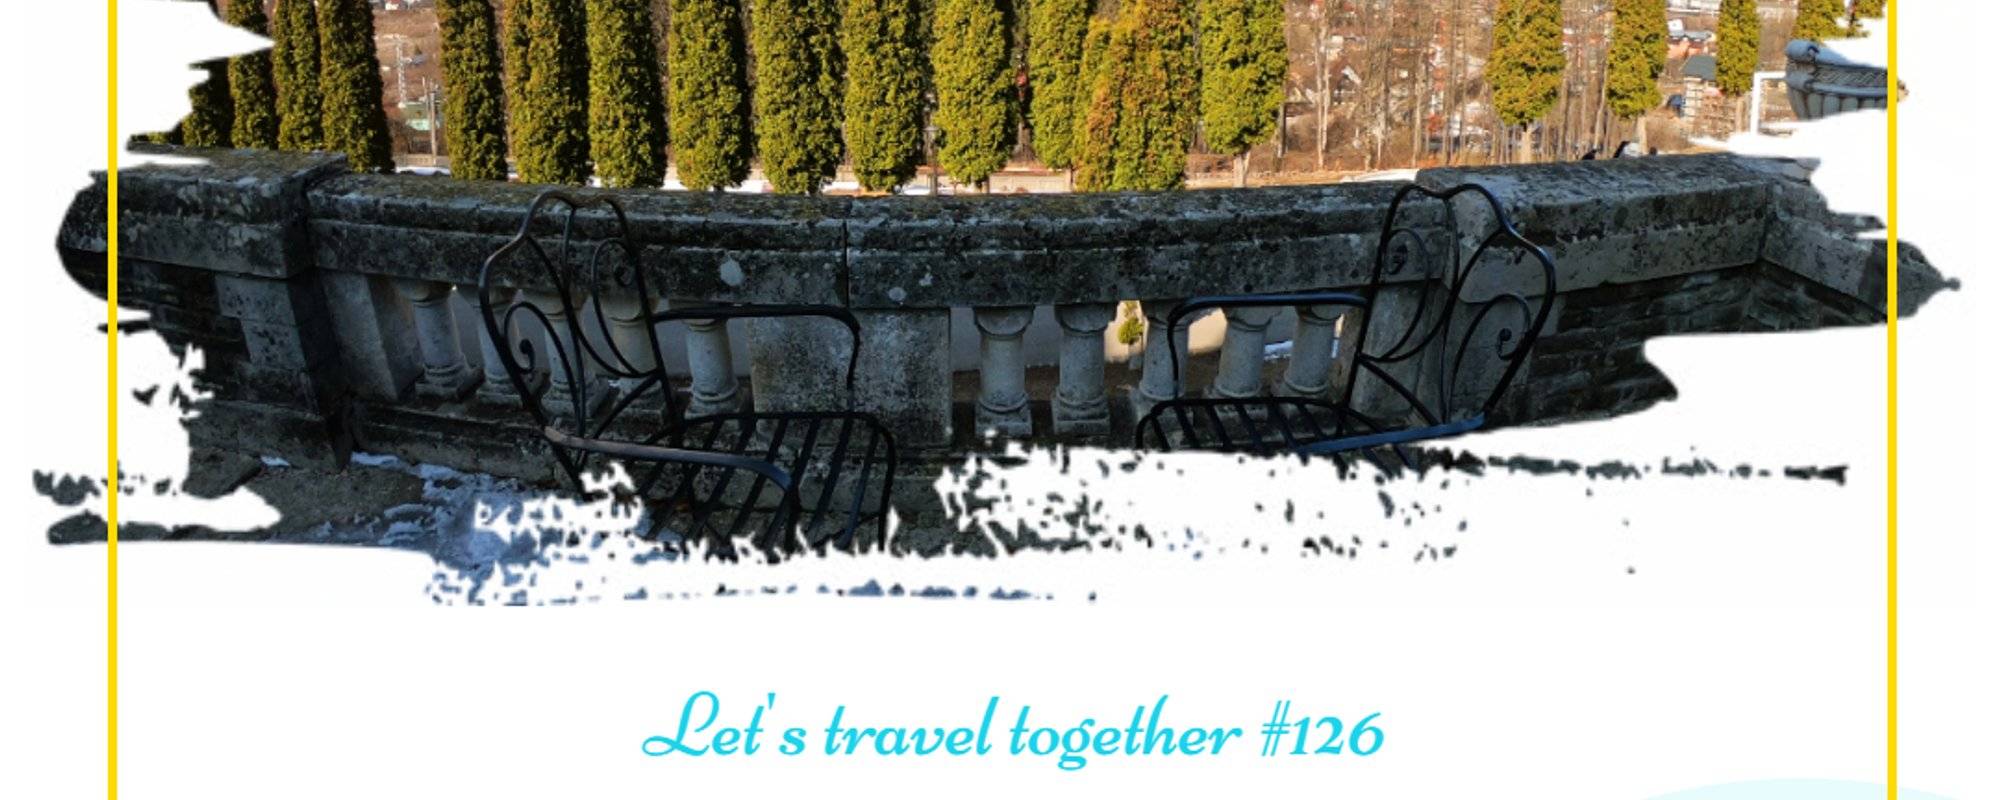 Let's travel together #126 - Castelul Cantacuzino (Cantacuzino Castle)